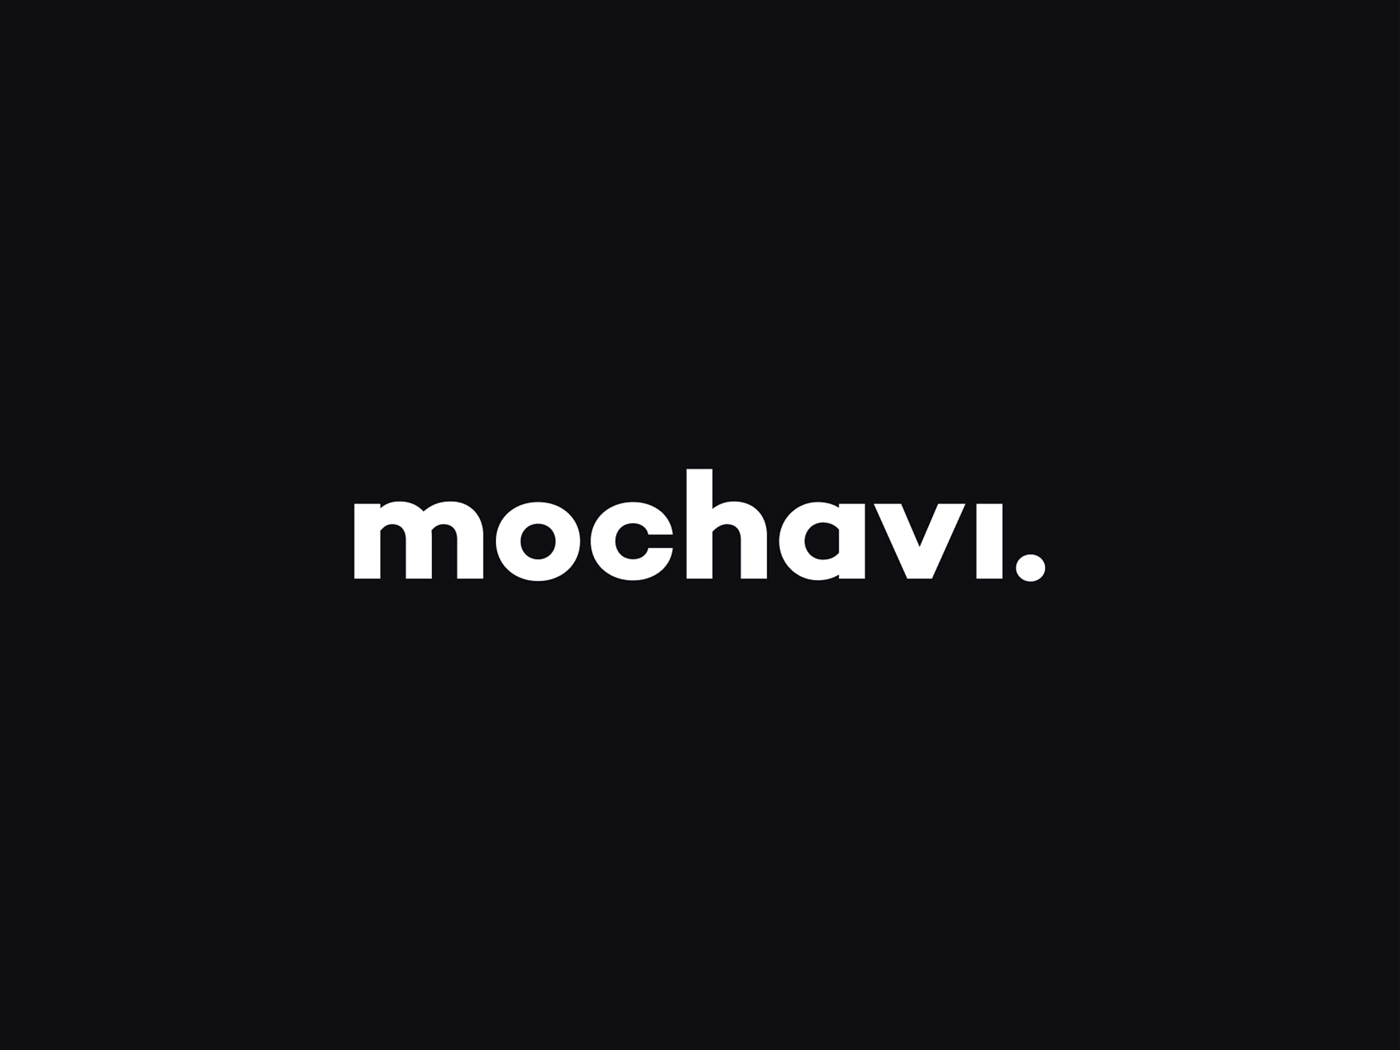 Mochavi